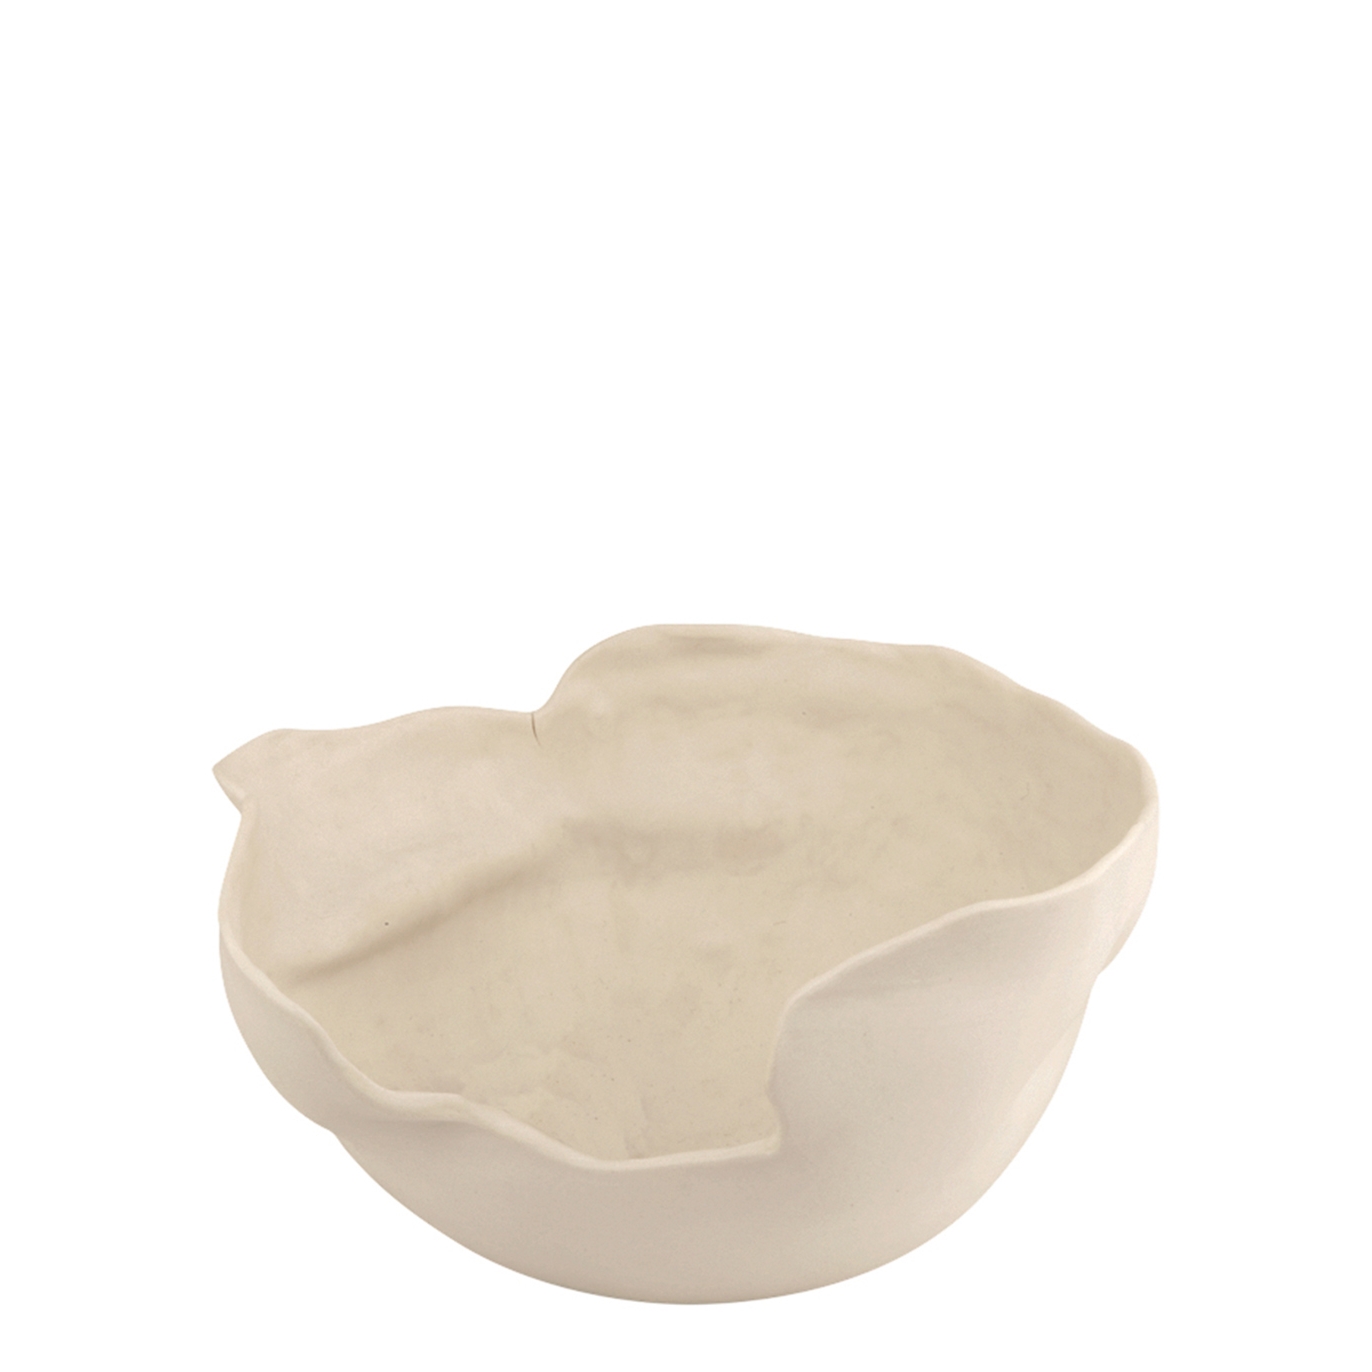 Completedworks X Ekaterina Bazhenova Yamasaki Fruit Bowl Vase - White